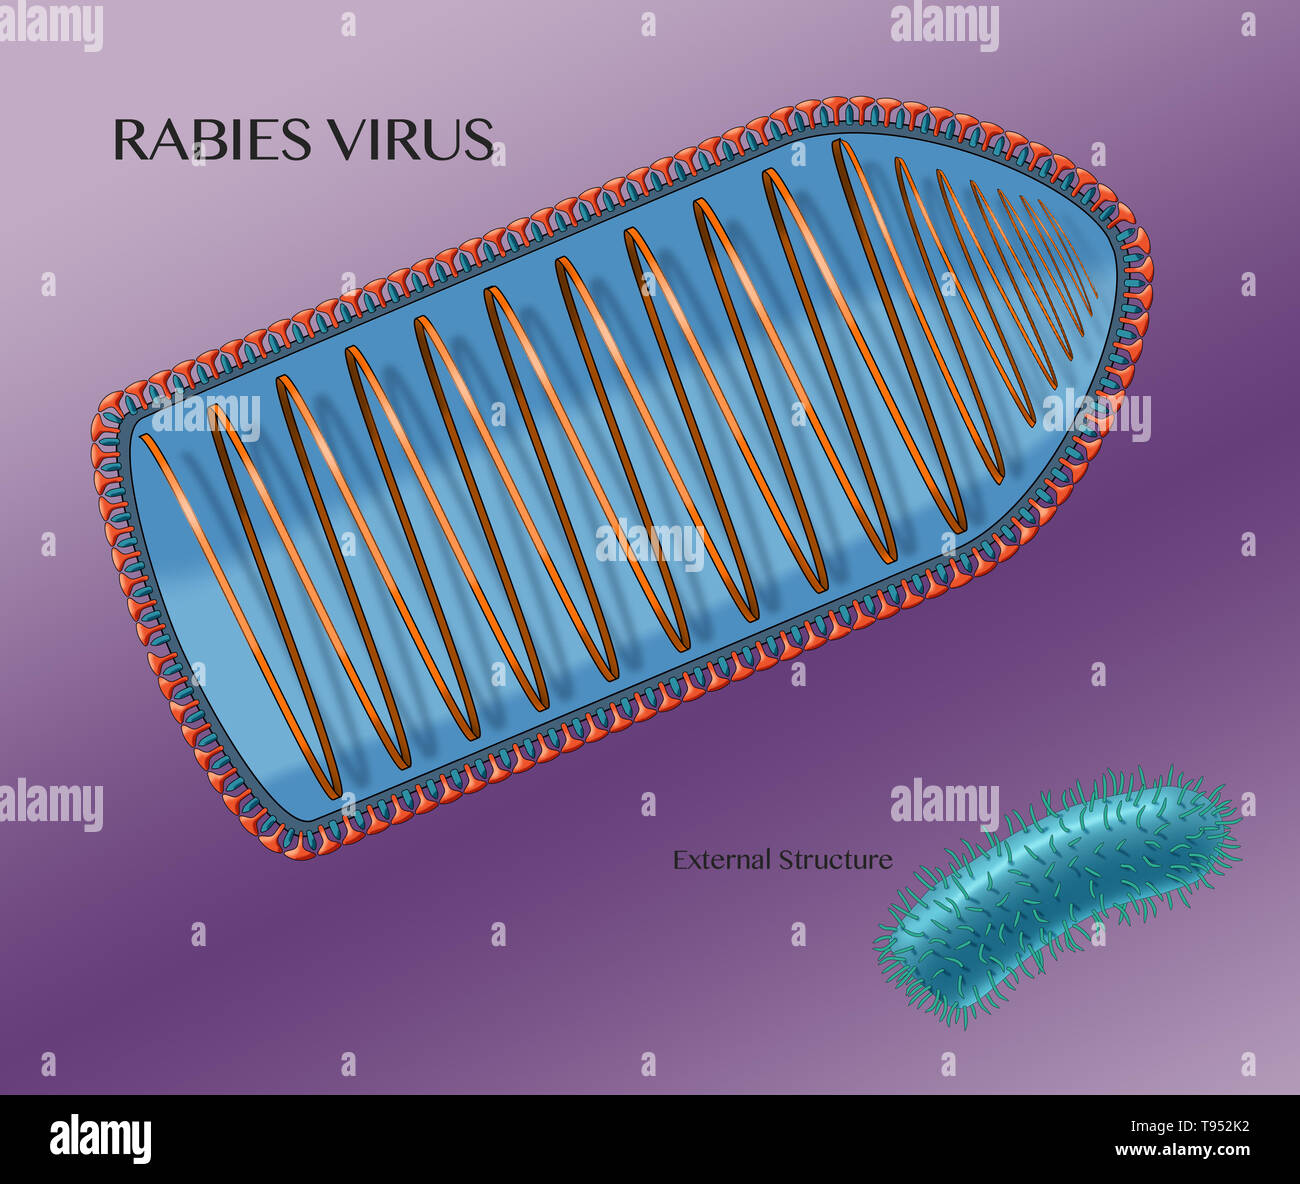 Ilustración que muestra la estructura interna del virus de rabia, con la estructura externa se muestra en la esquina inferior derecha. El virus de la rabia es un virus que causa neurotropic rabia en seres humanos y animales. El virus de la rabia tiene una morfología cilíndrica y es la especie tipo del género Lyssavirus de la familia Rhabdoviridae. Foto de stock